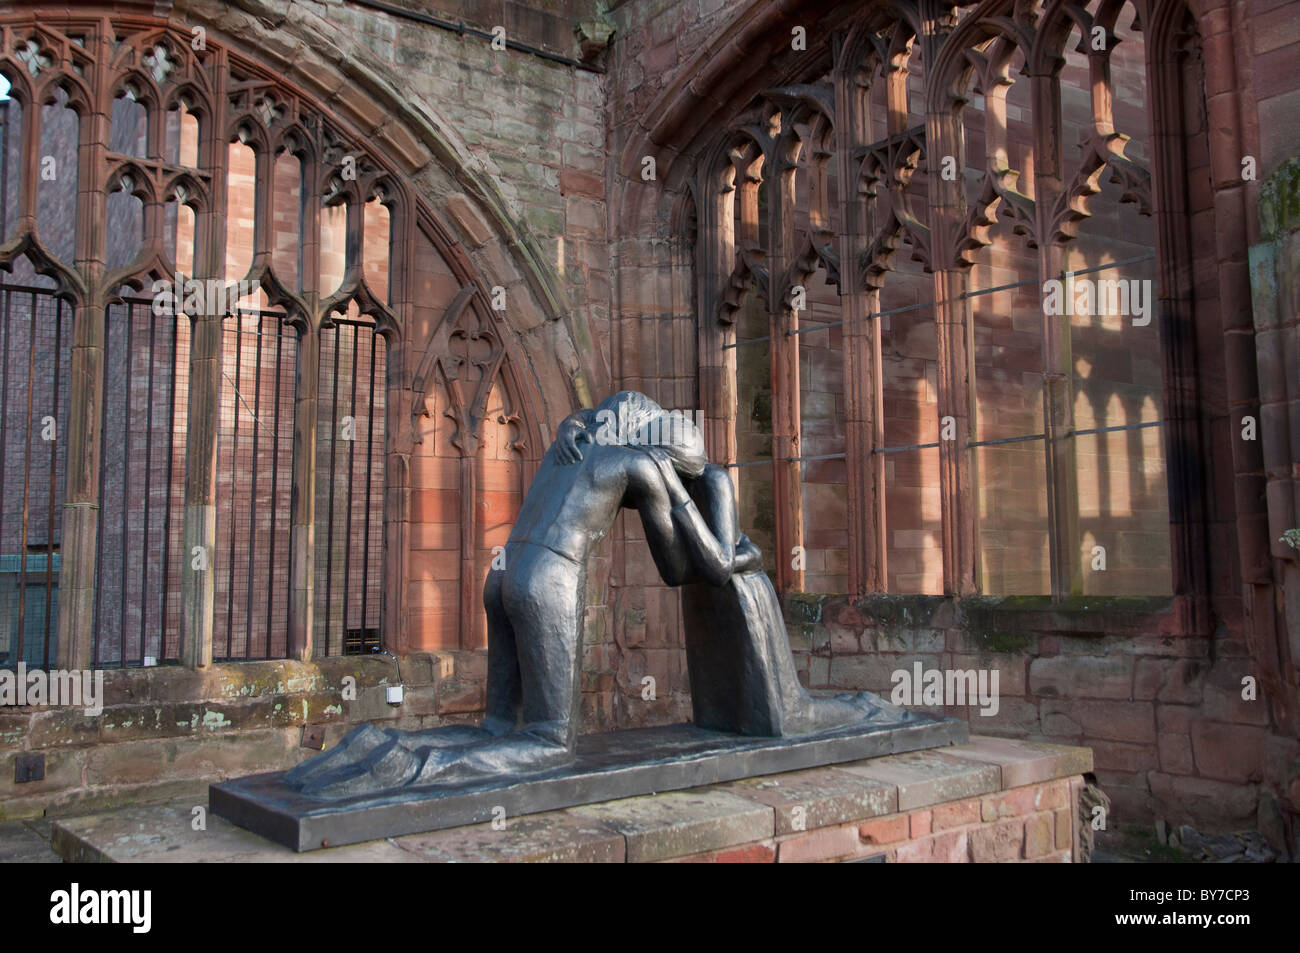 La statue de la réconciliation par Josefina de Vasconcellos dans les ruines de la cathédrale de Coventry, West Midlands, Royaume-Uni Banque D'Images